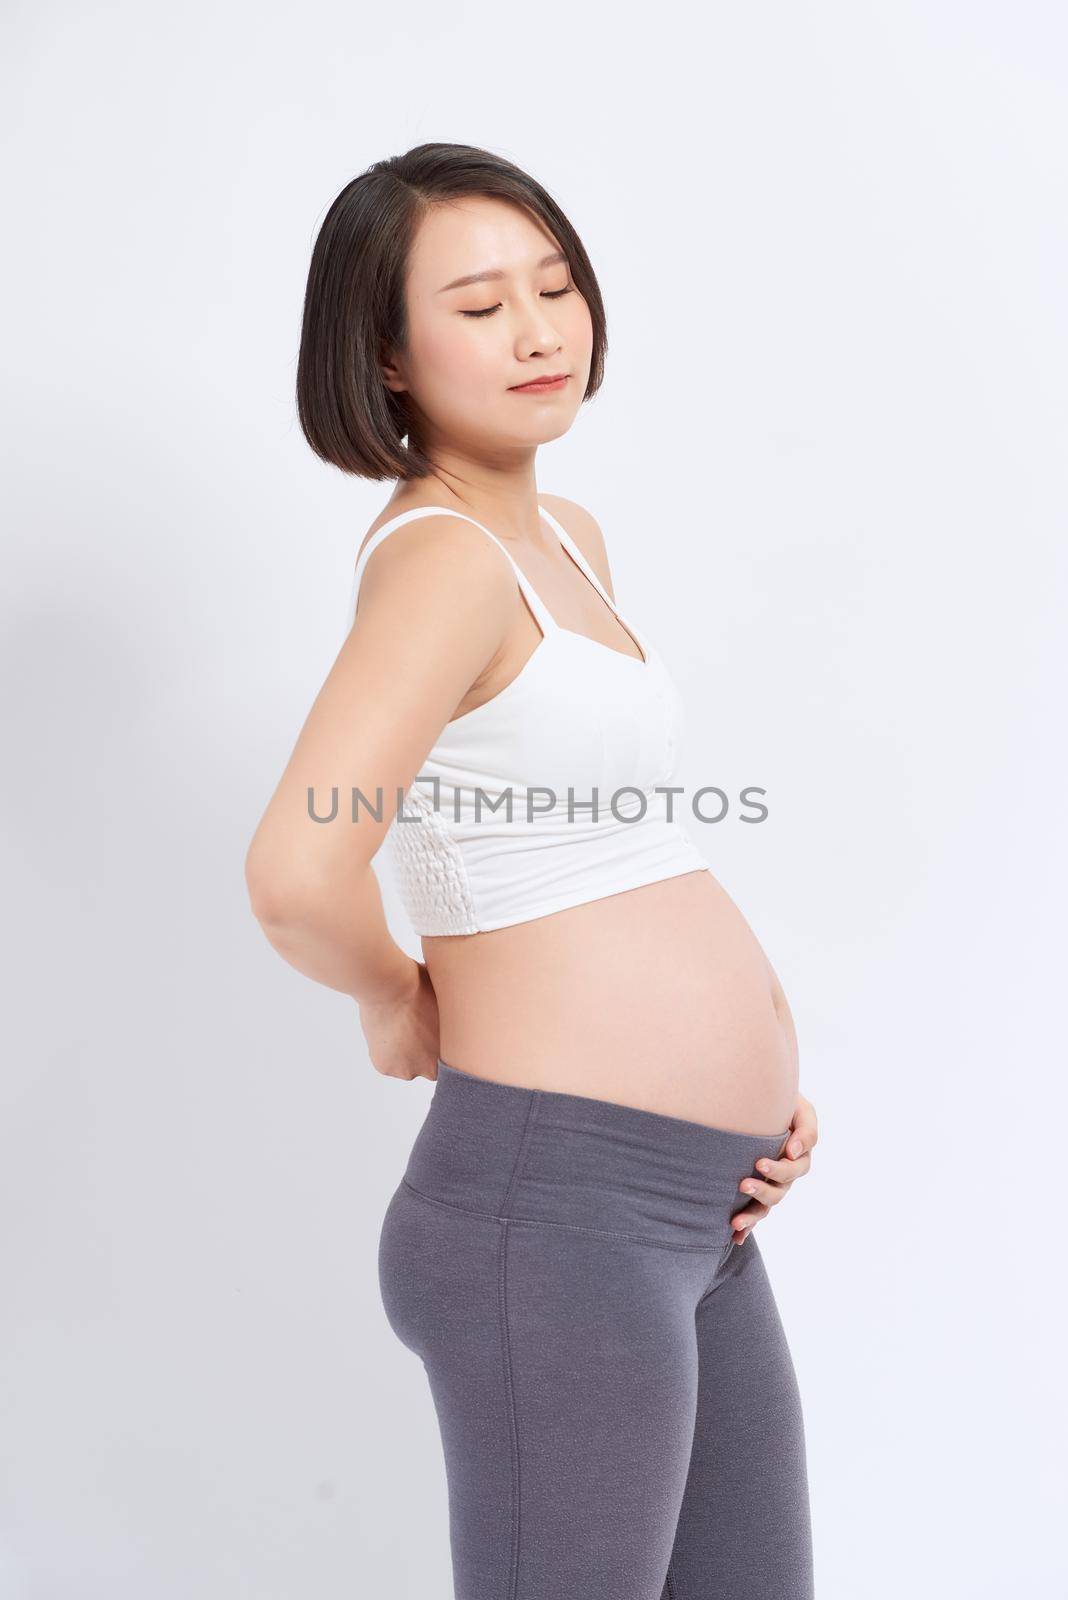 Pregnant female having back pain